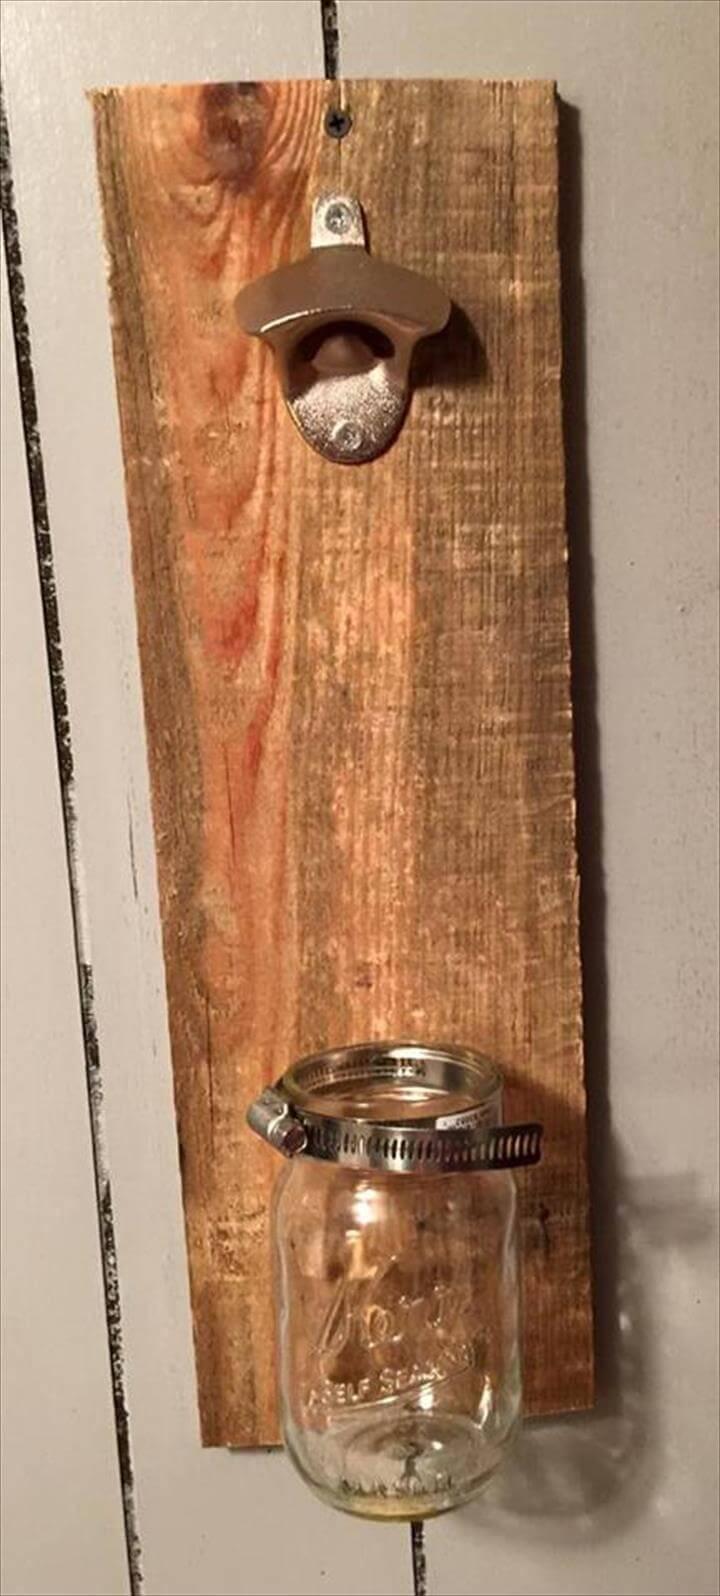 handmade pallet bottle opener with bottle holder